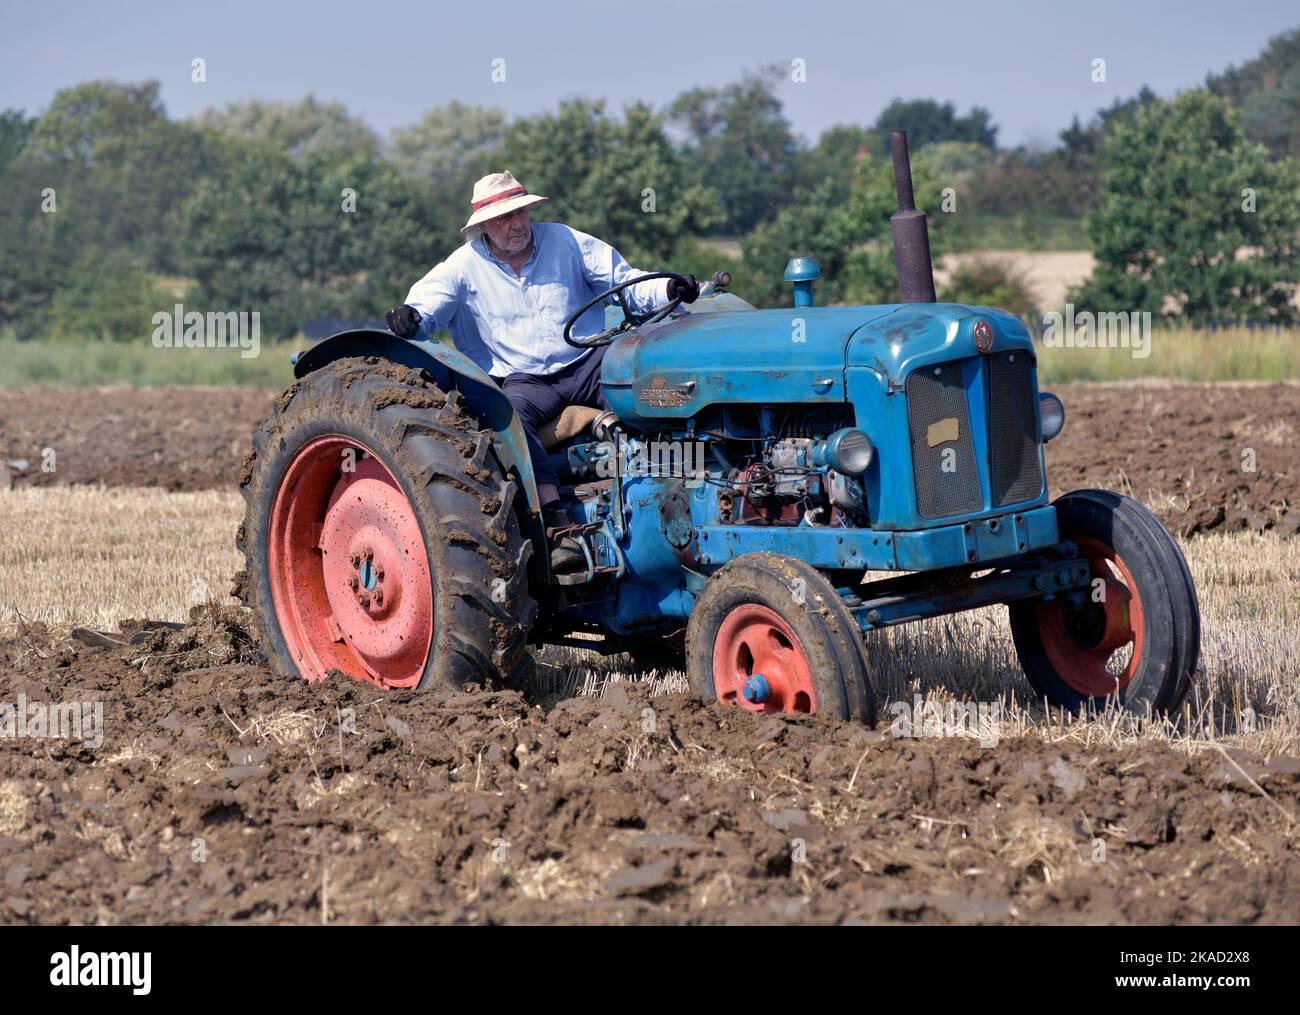 el tractor antiguo fordson se utiliza en el clásico día de arado agrícola en brampton suffolk, inglaterra Foto de stock